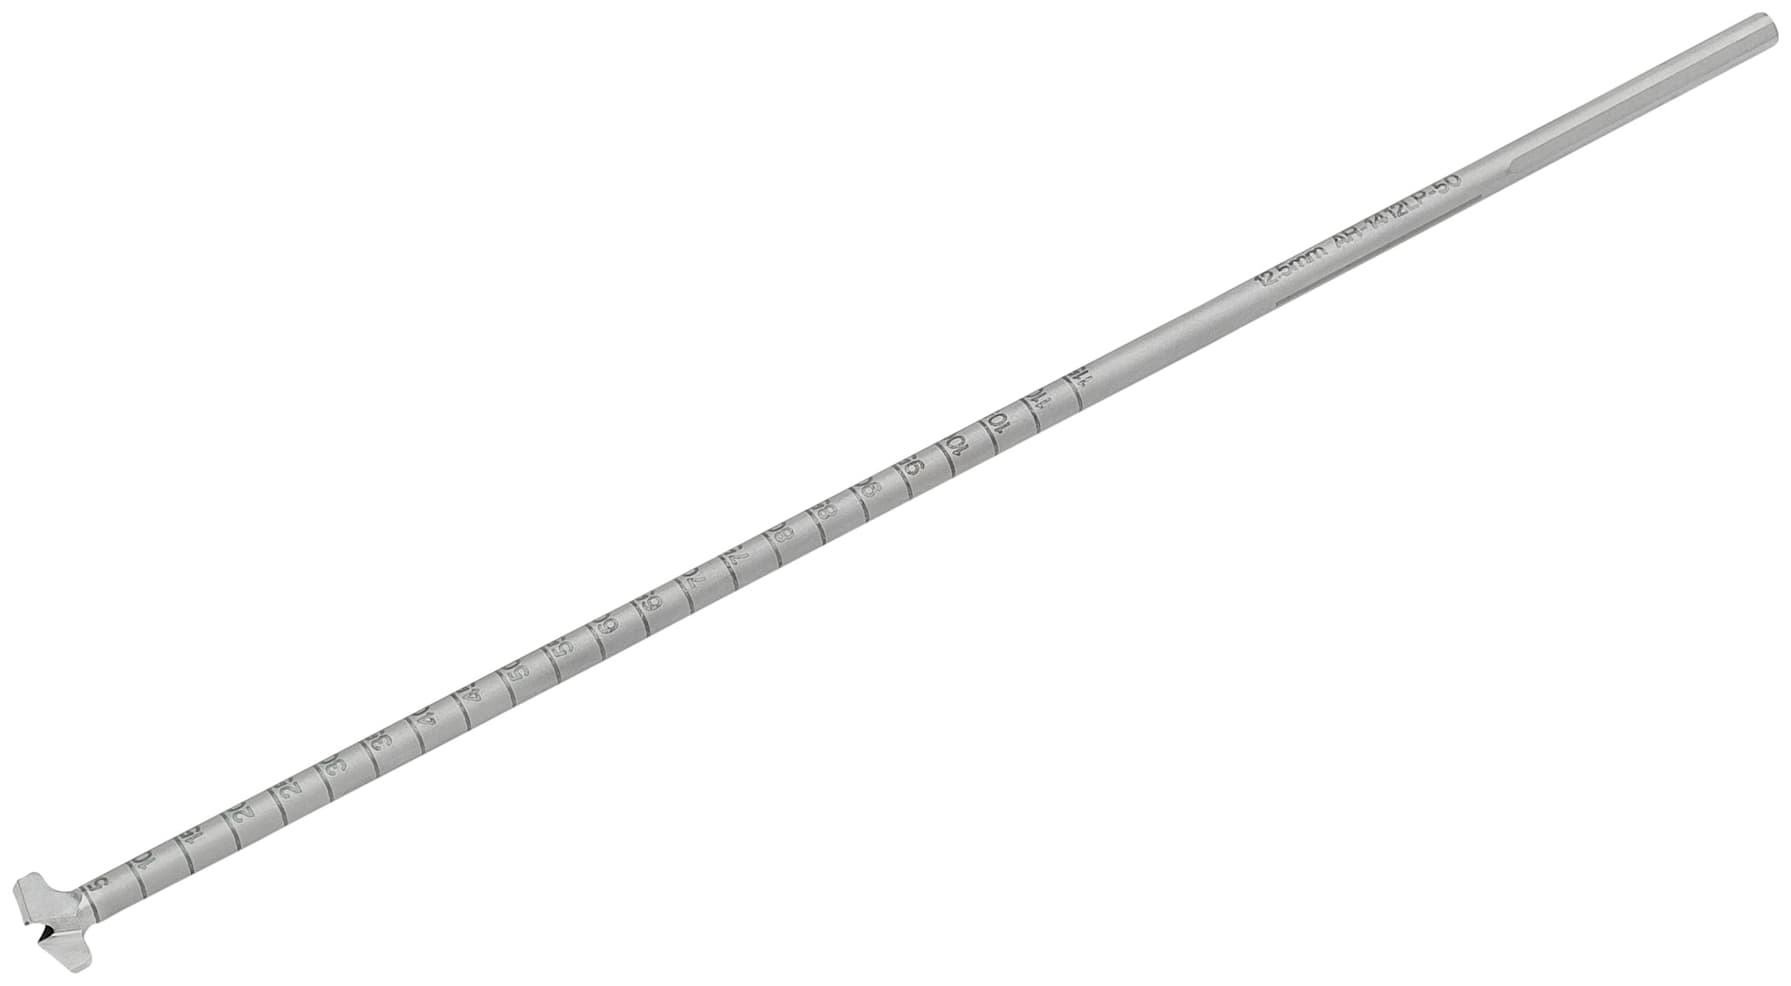 Low Profile Reamer, 12.5 mm, sterile, SU